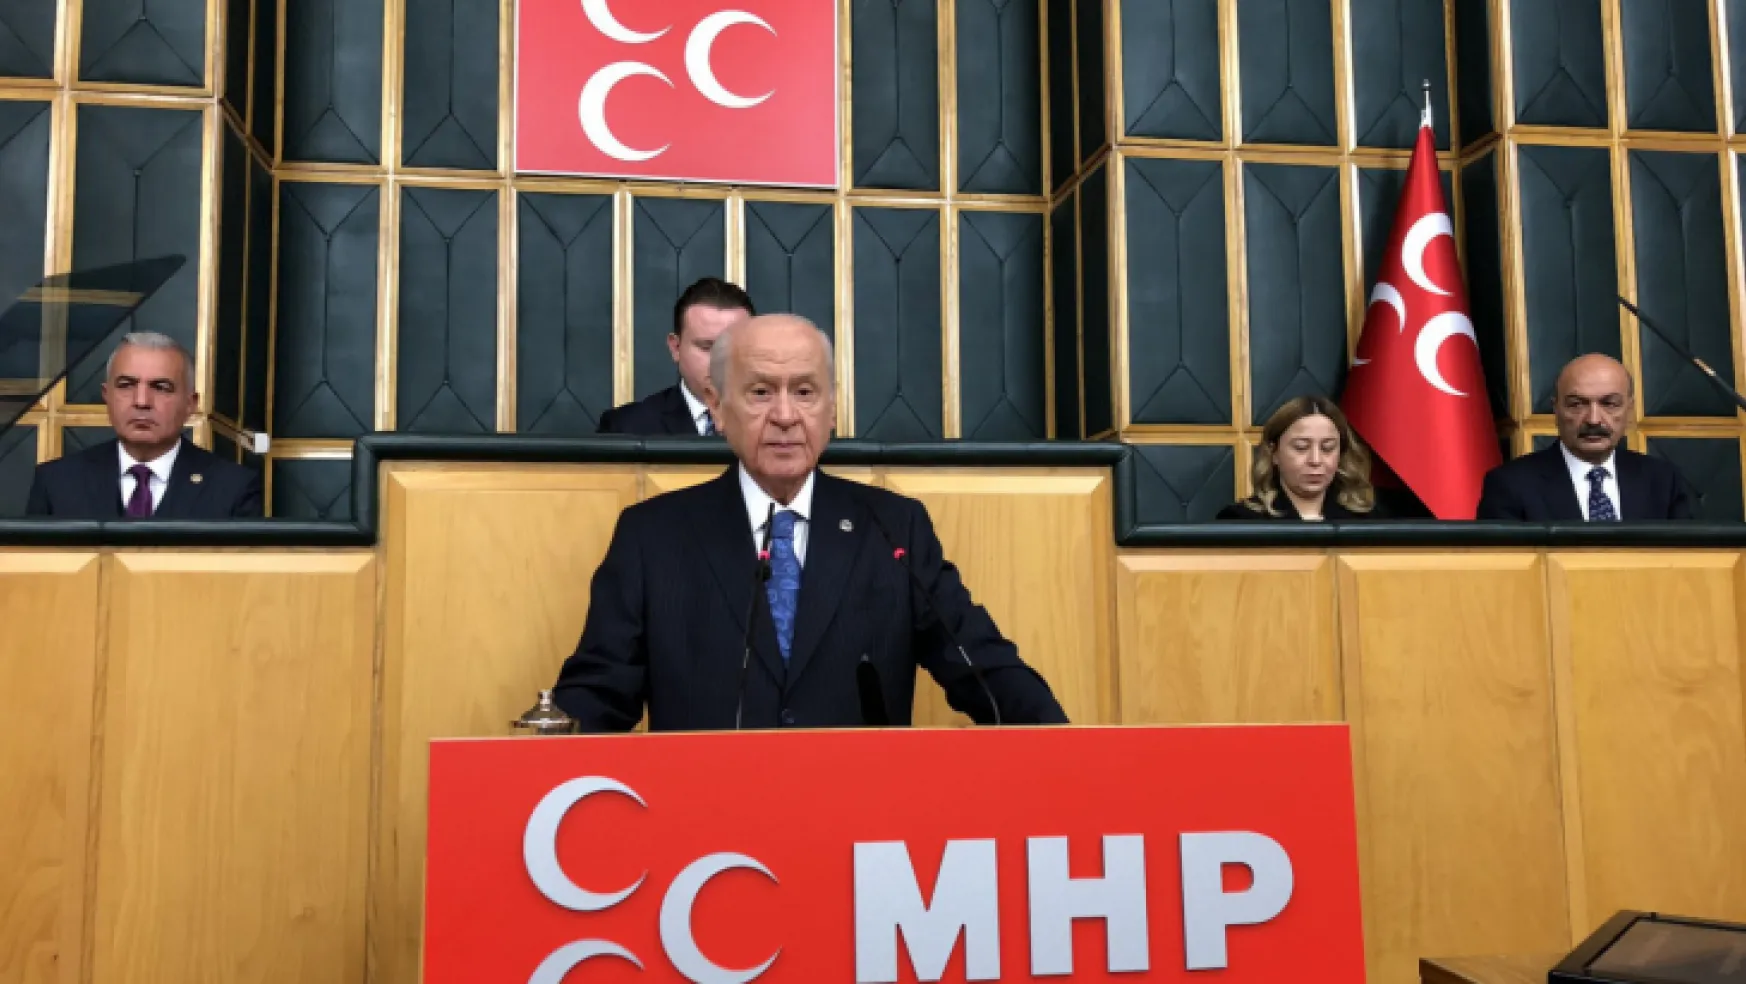 MHP Lideri Devlet Bahçeli: 2023'ün yol haritasını hazırlıyoruz